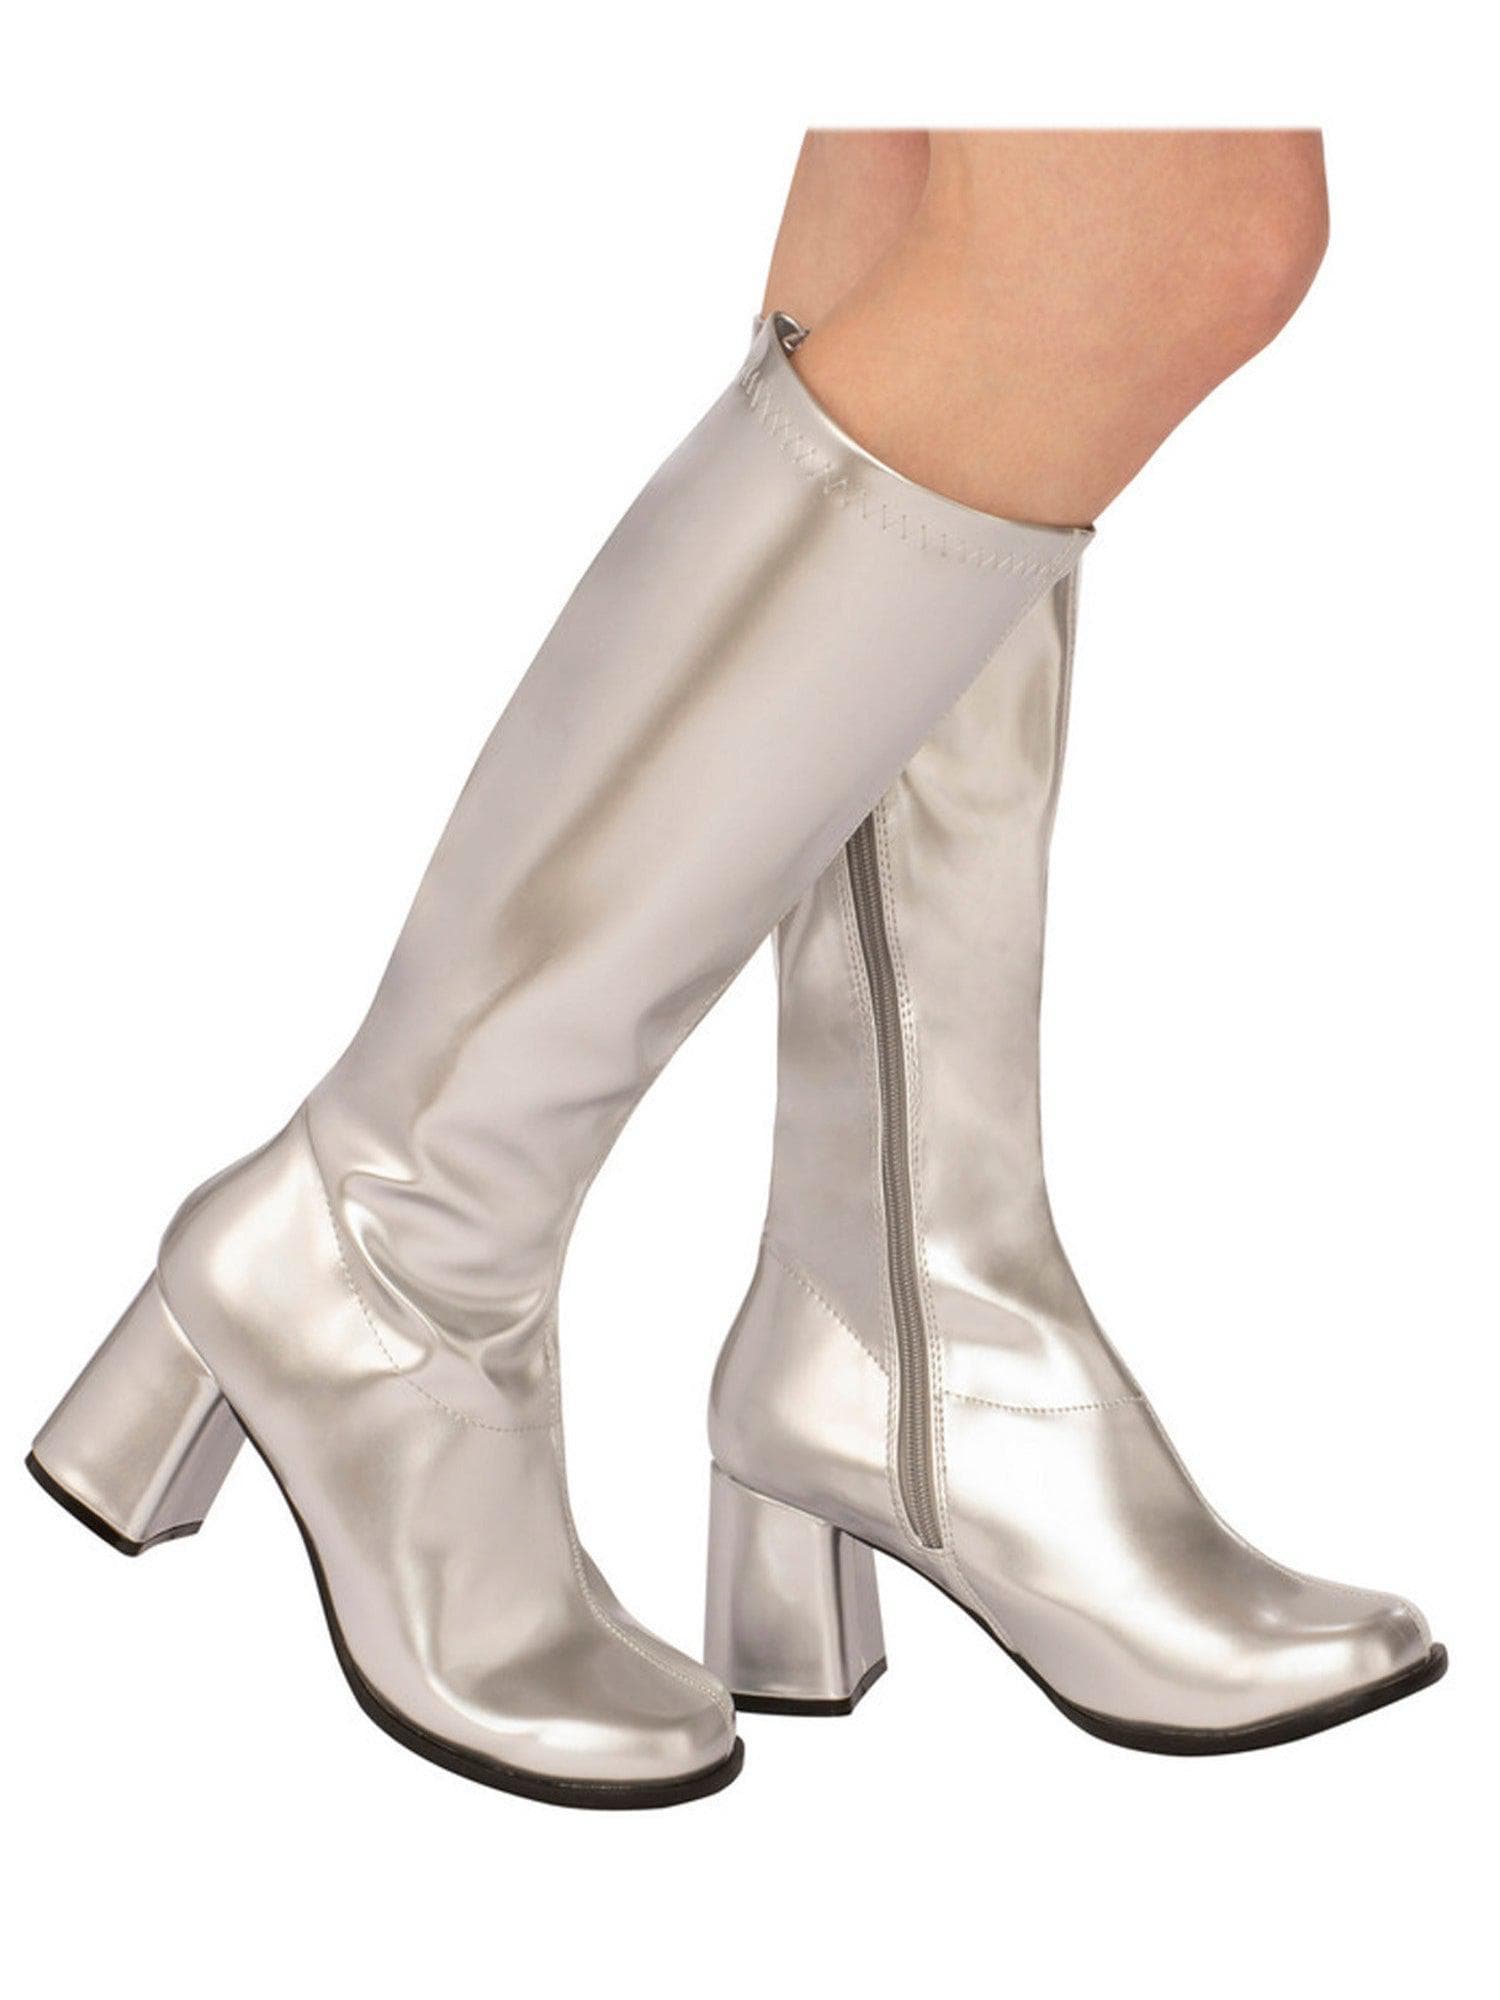 Adult Silver Metallic Go Go Disco Boots - costumes.com